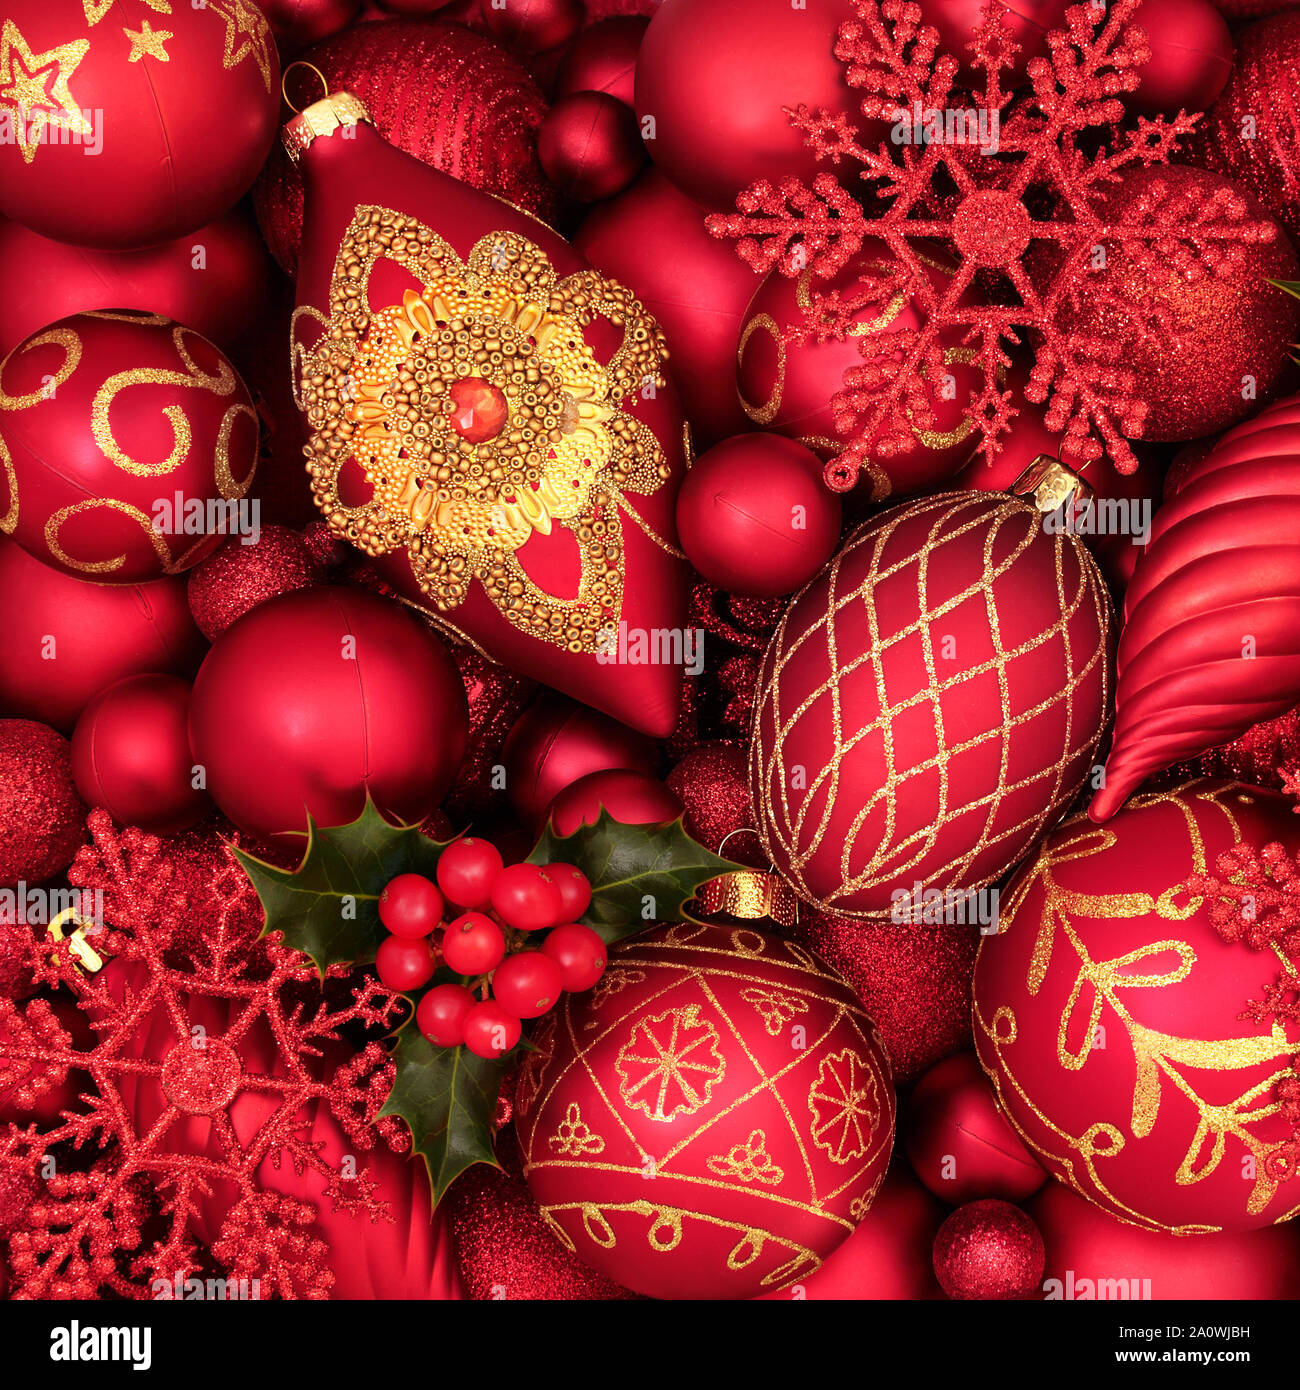 Holly et l'arbre de Noël décorations babiole formant un motif de fond. Thème Traditionnel avec des symboles pour la période des fêtes. Banque D'Images